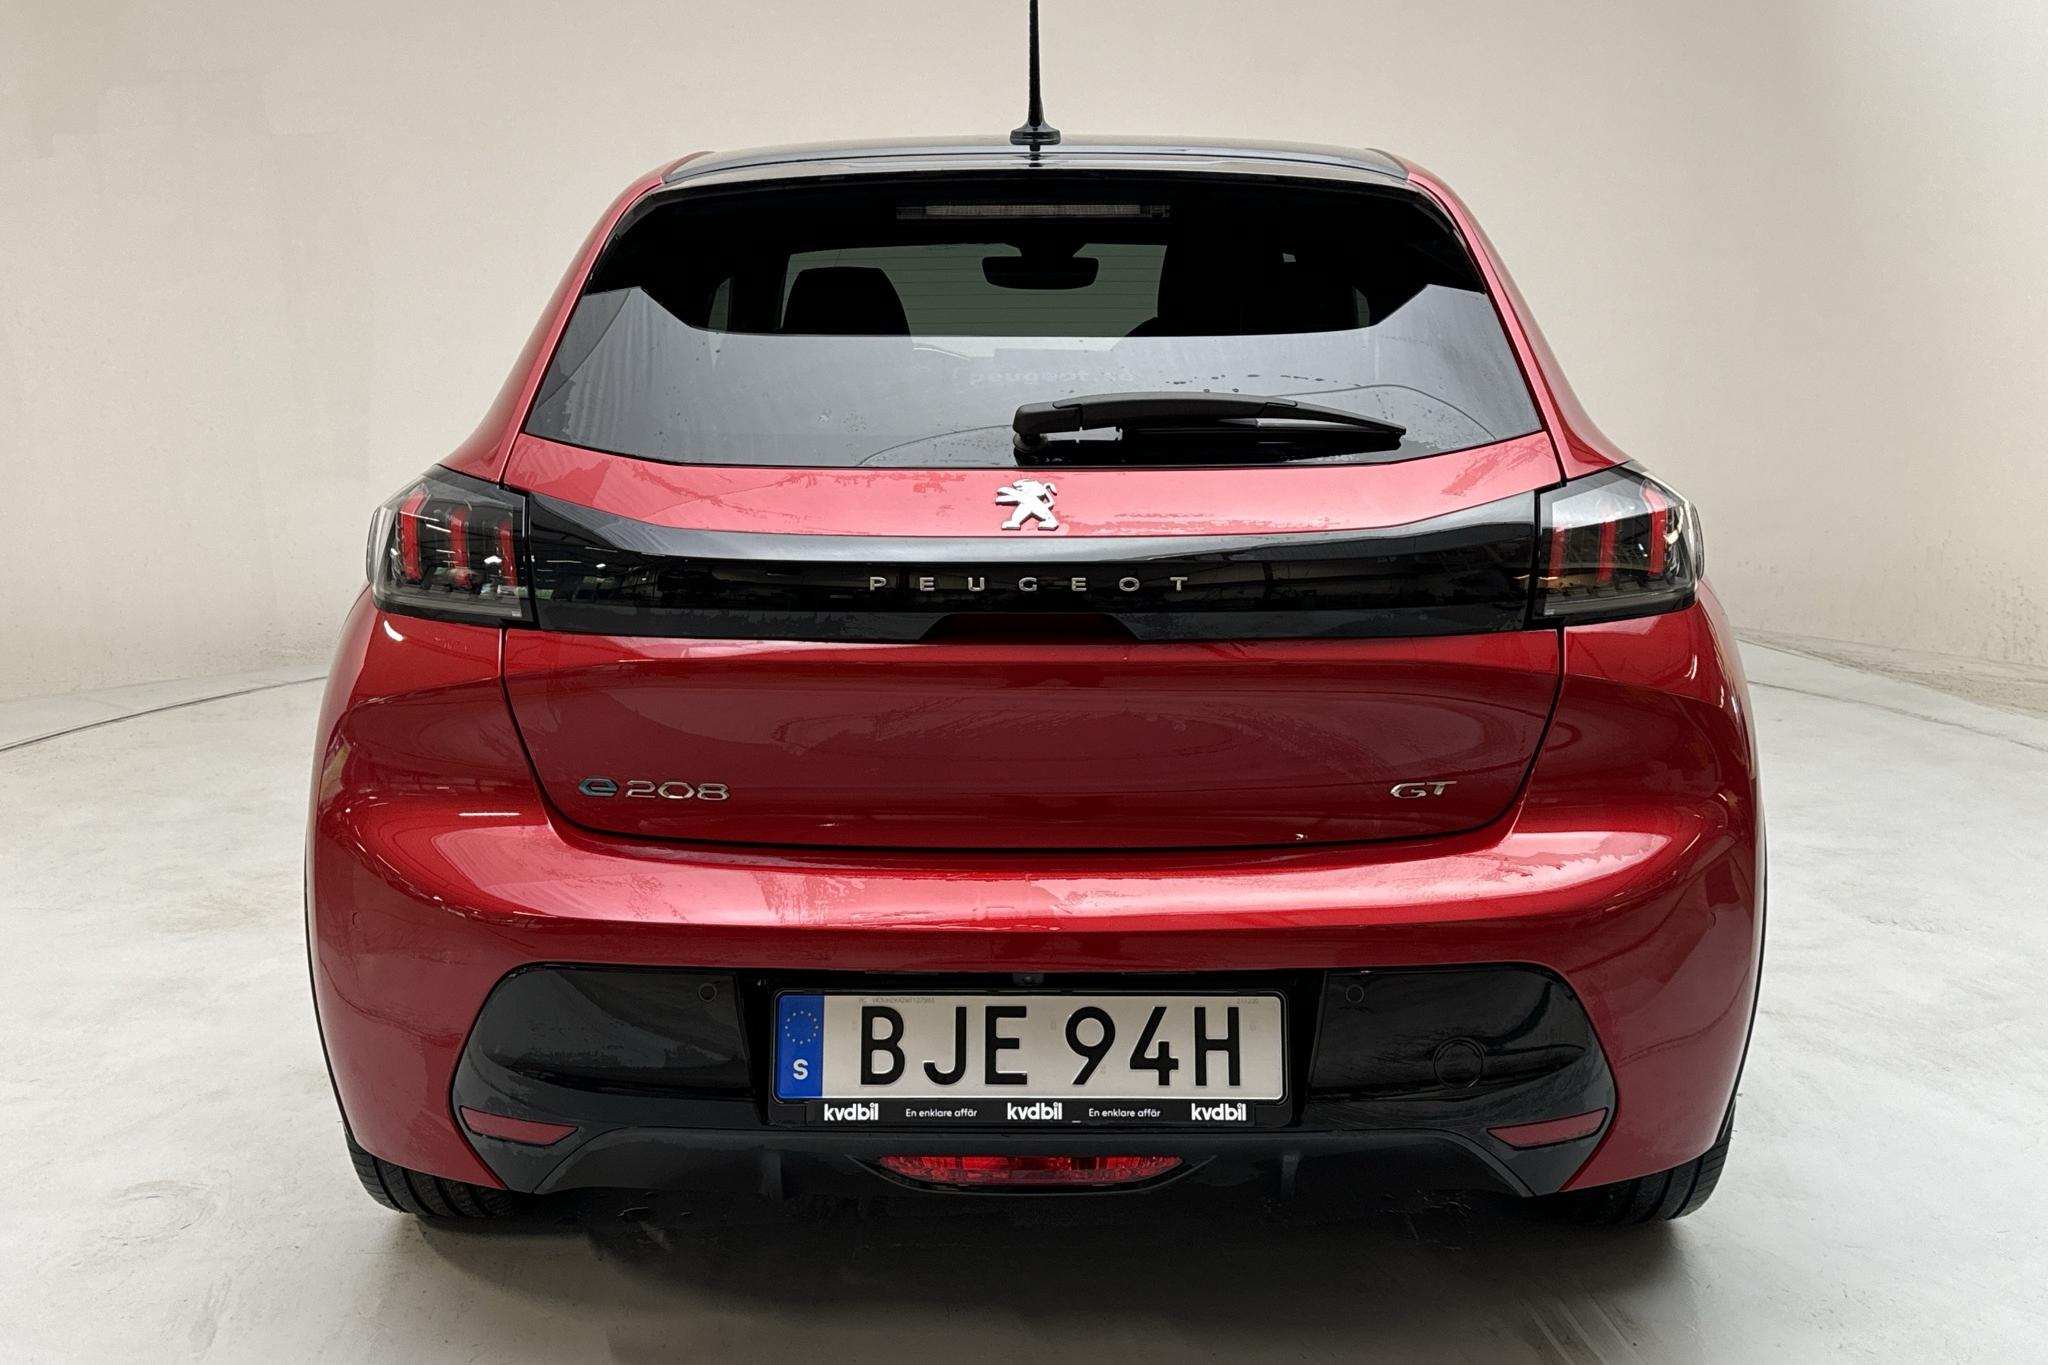 Peugeot e-208 50 kWh 5dr (136hk) - 17 370 km - Automatyczna - czerwony - 2021